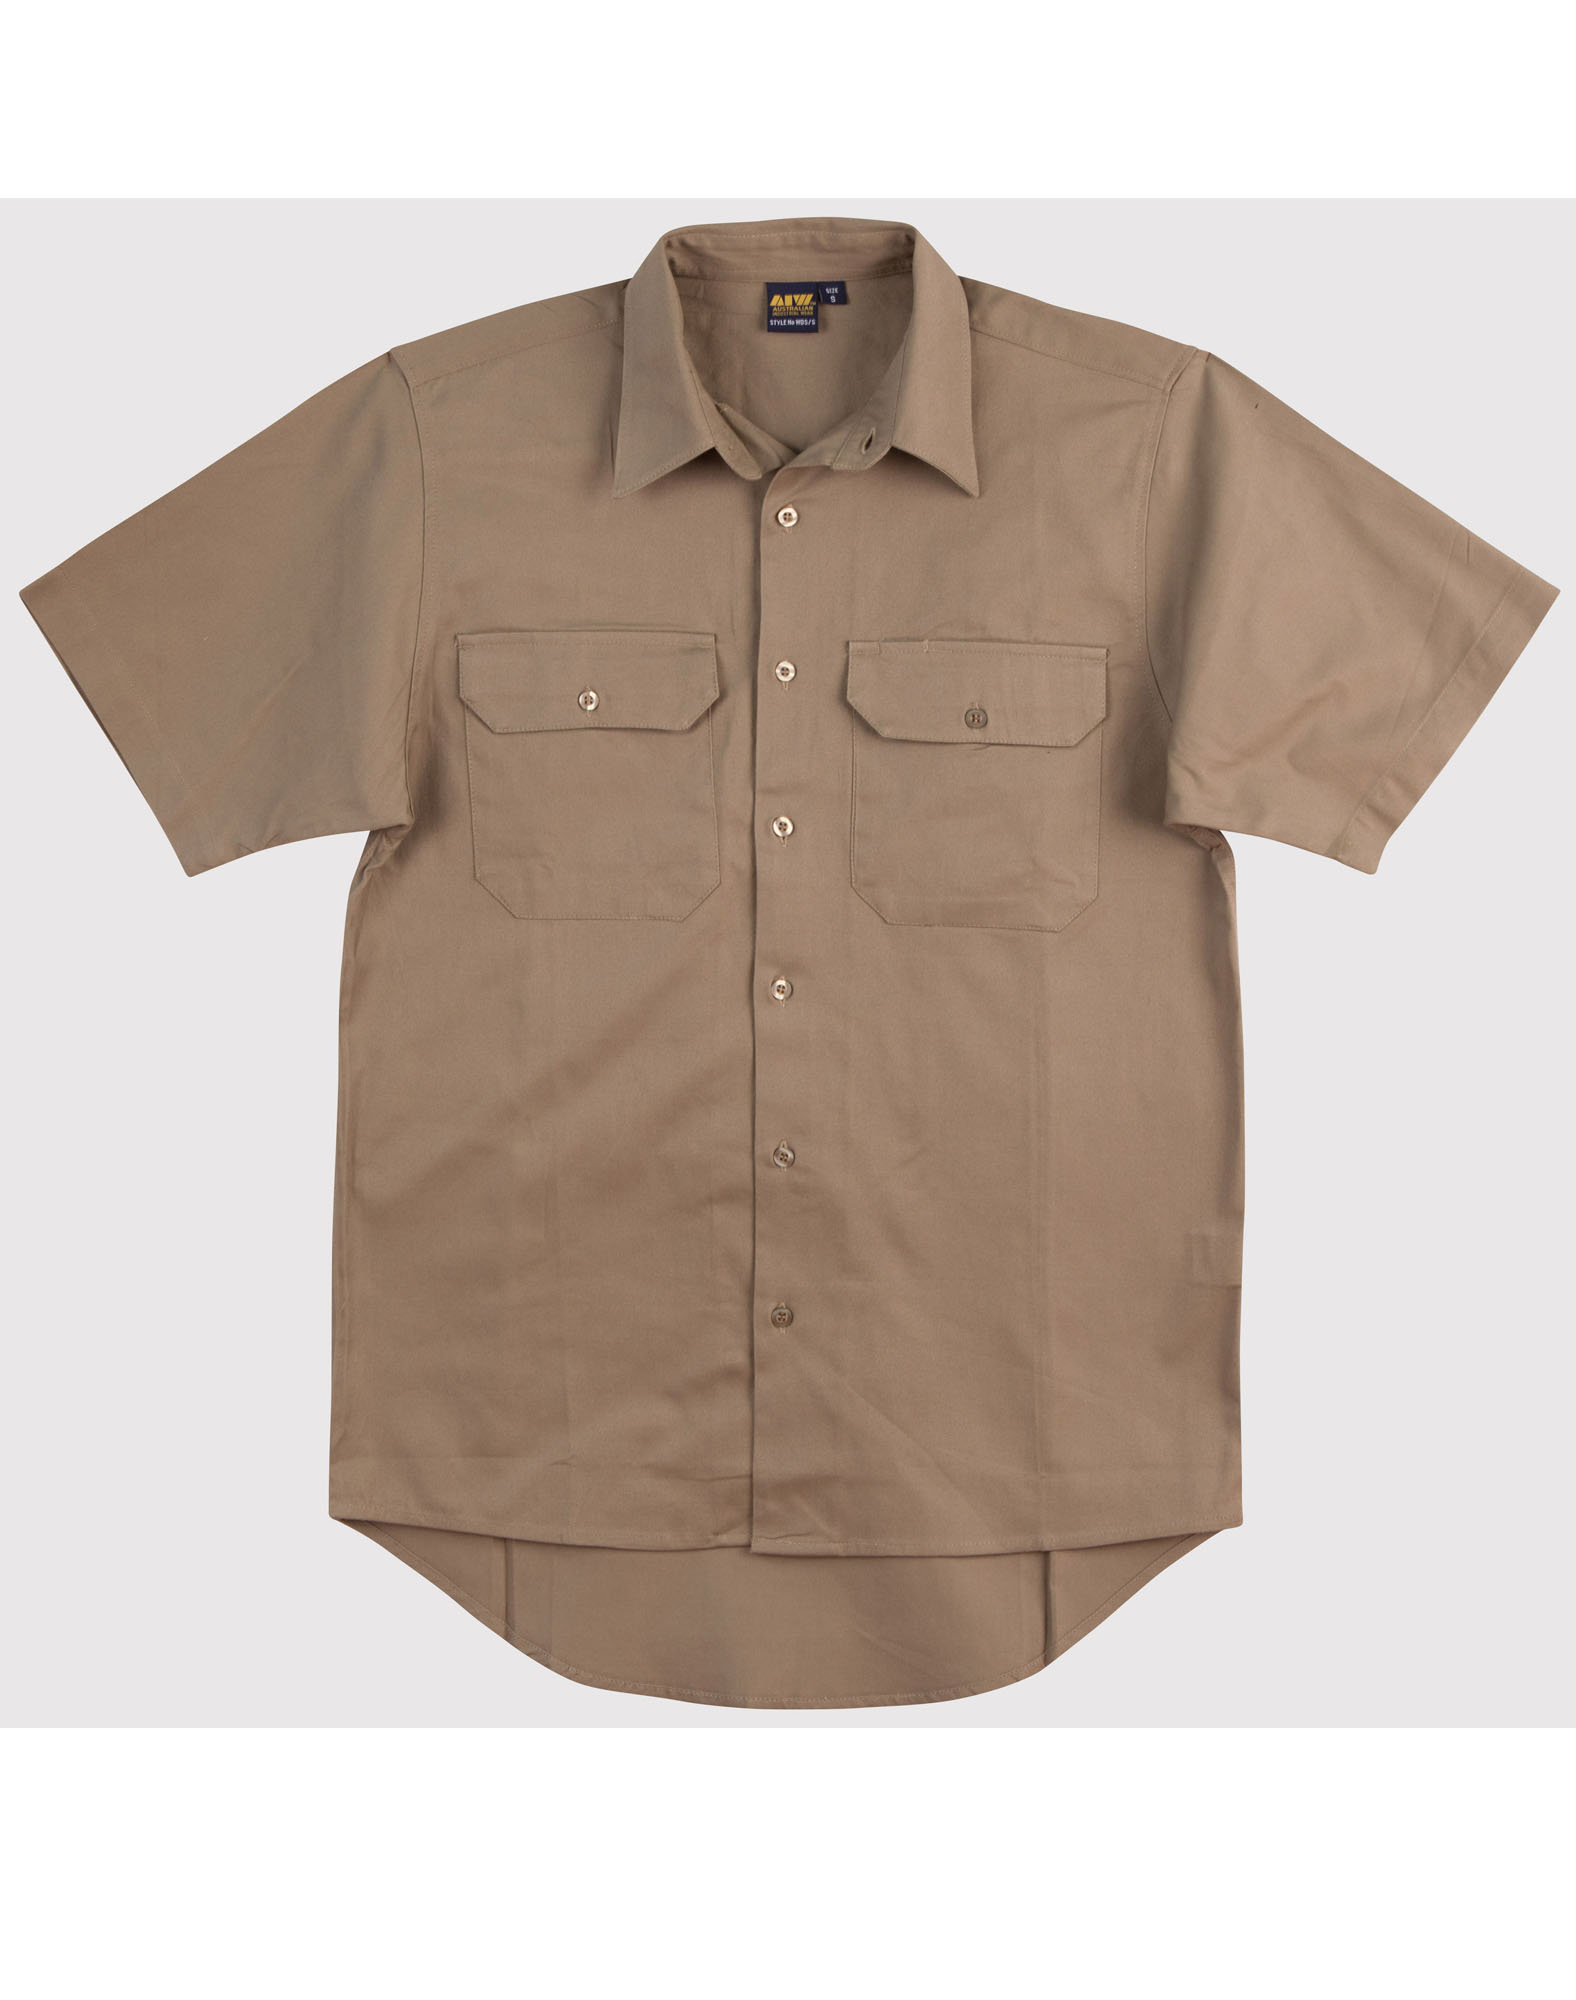 190gsm Cotton Drill Short Sleeve Work Shirt WT03